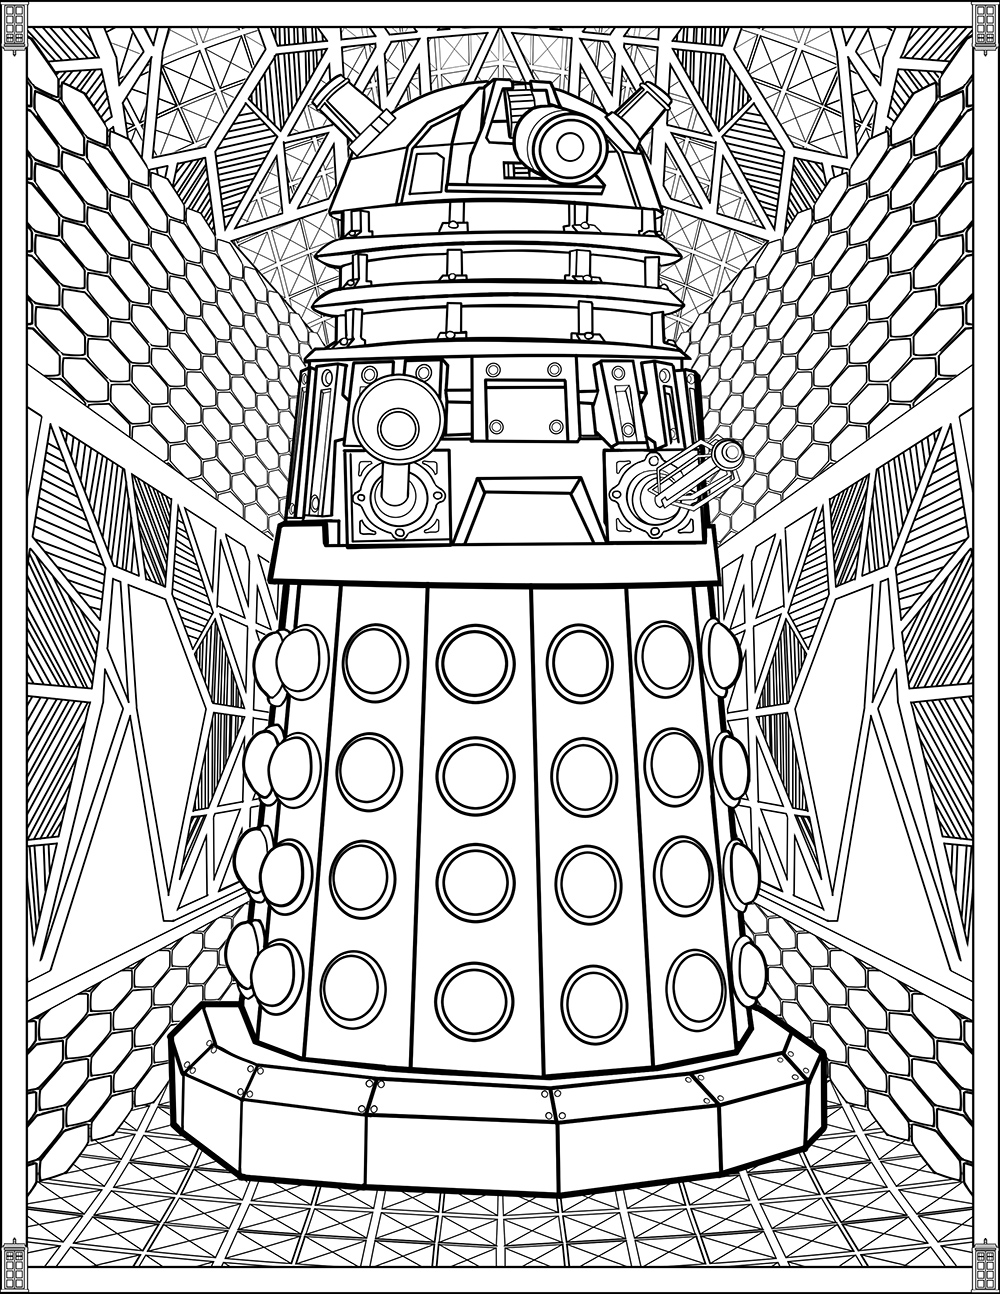 Docteur Who : Dalek, Artiste : Brady Johnson   Source : fun